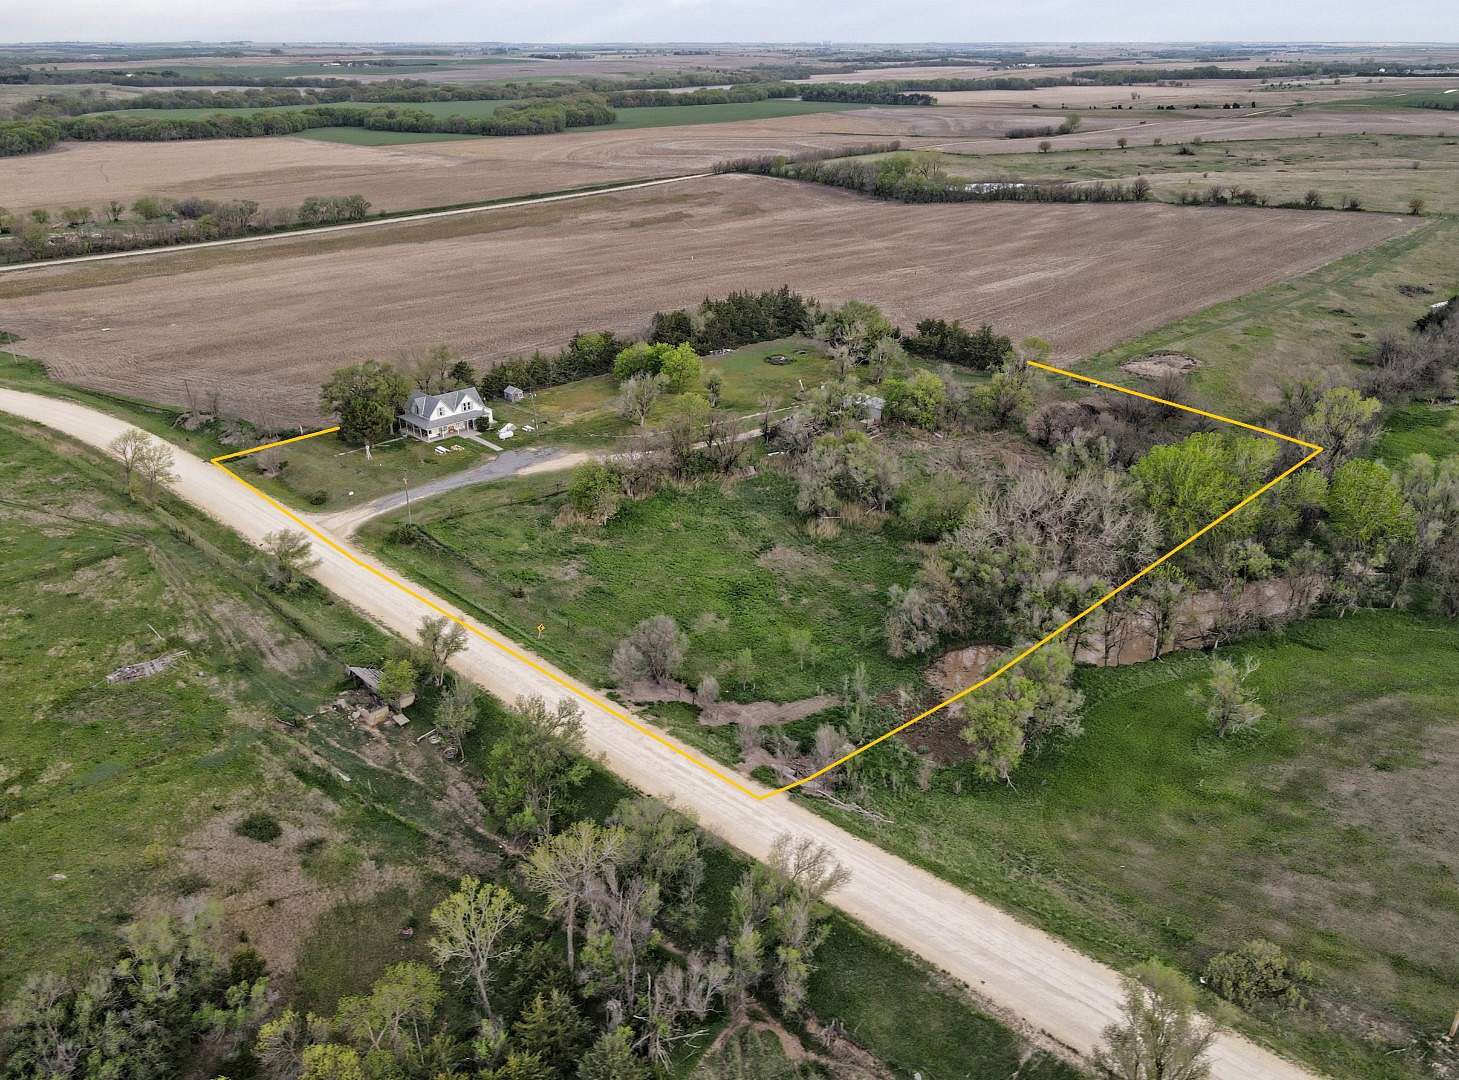 4.2 Acres of Land for Sale in Lebanon, Kansas